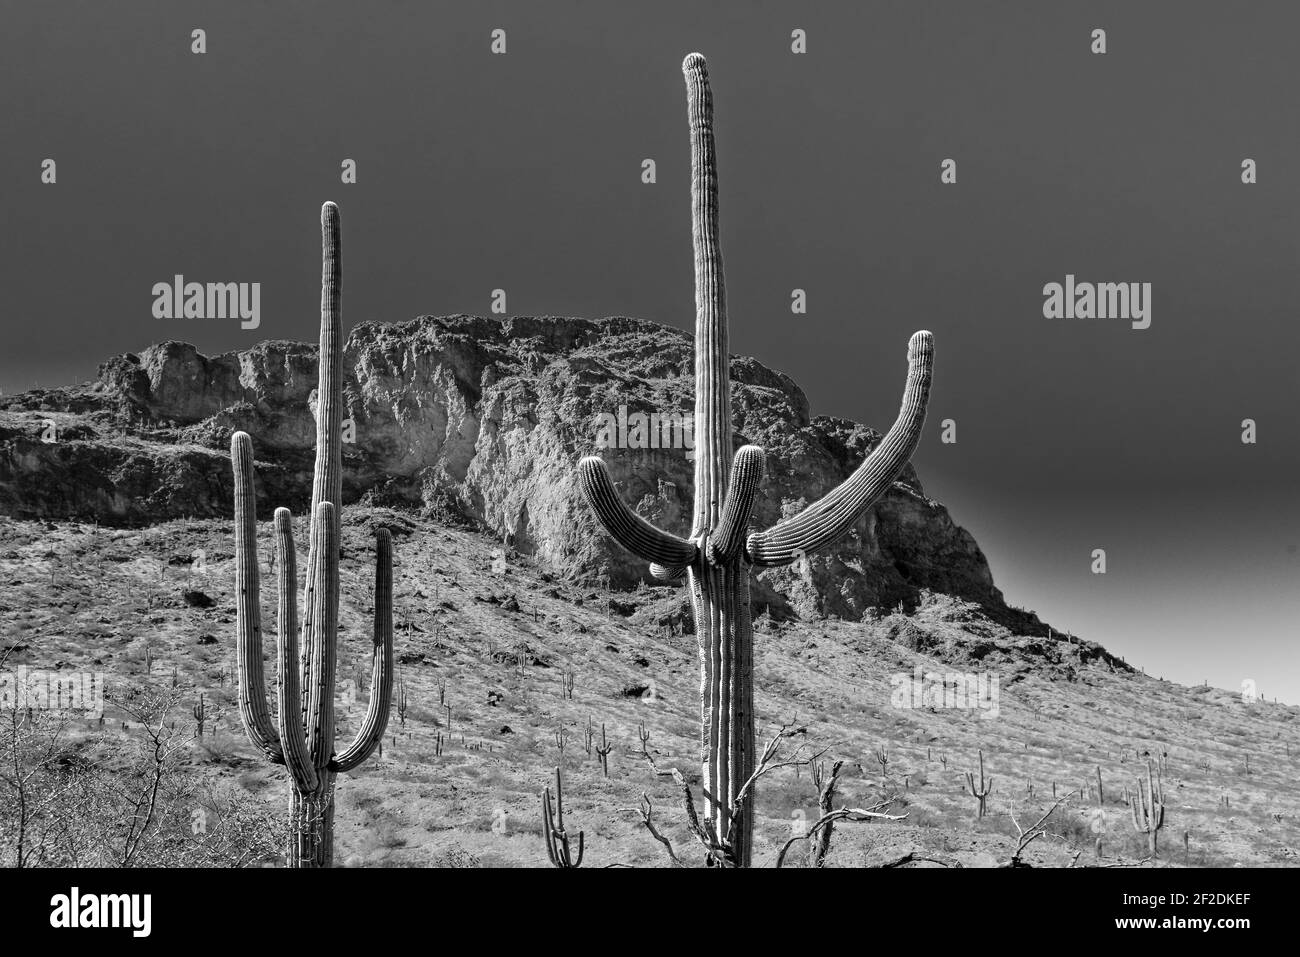 Groupes de cactus Saguaro avec des bras vers le haut avec le fond des pics et des vallées dans le désert de Sonoran à Picacho, AZ, Etats-Unis Banque D'Images